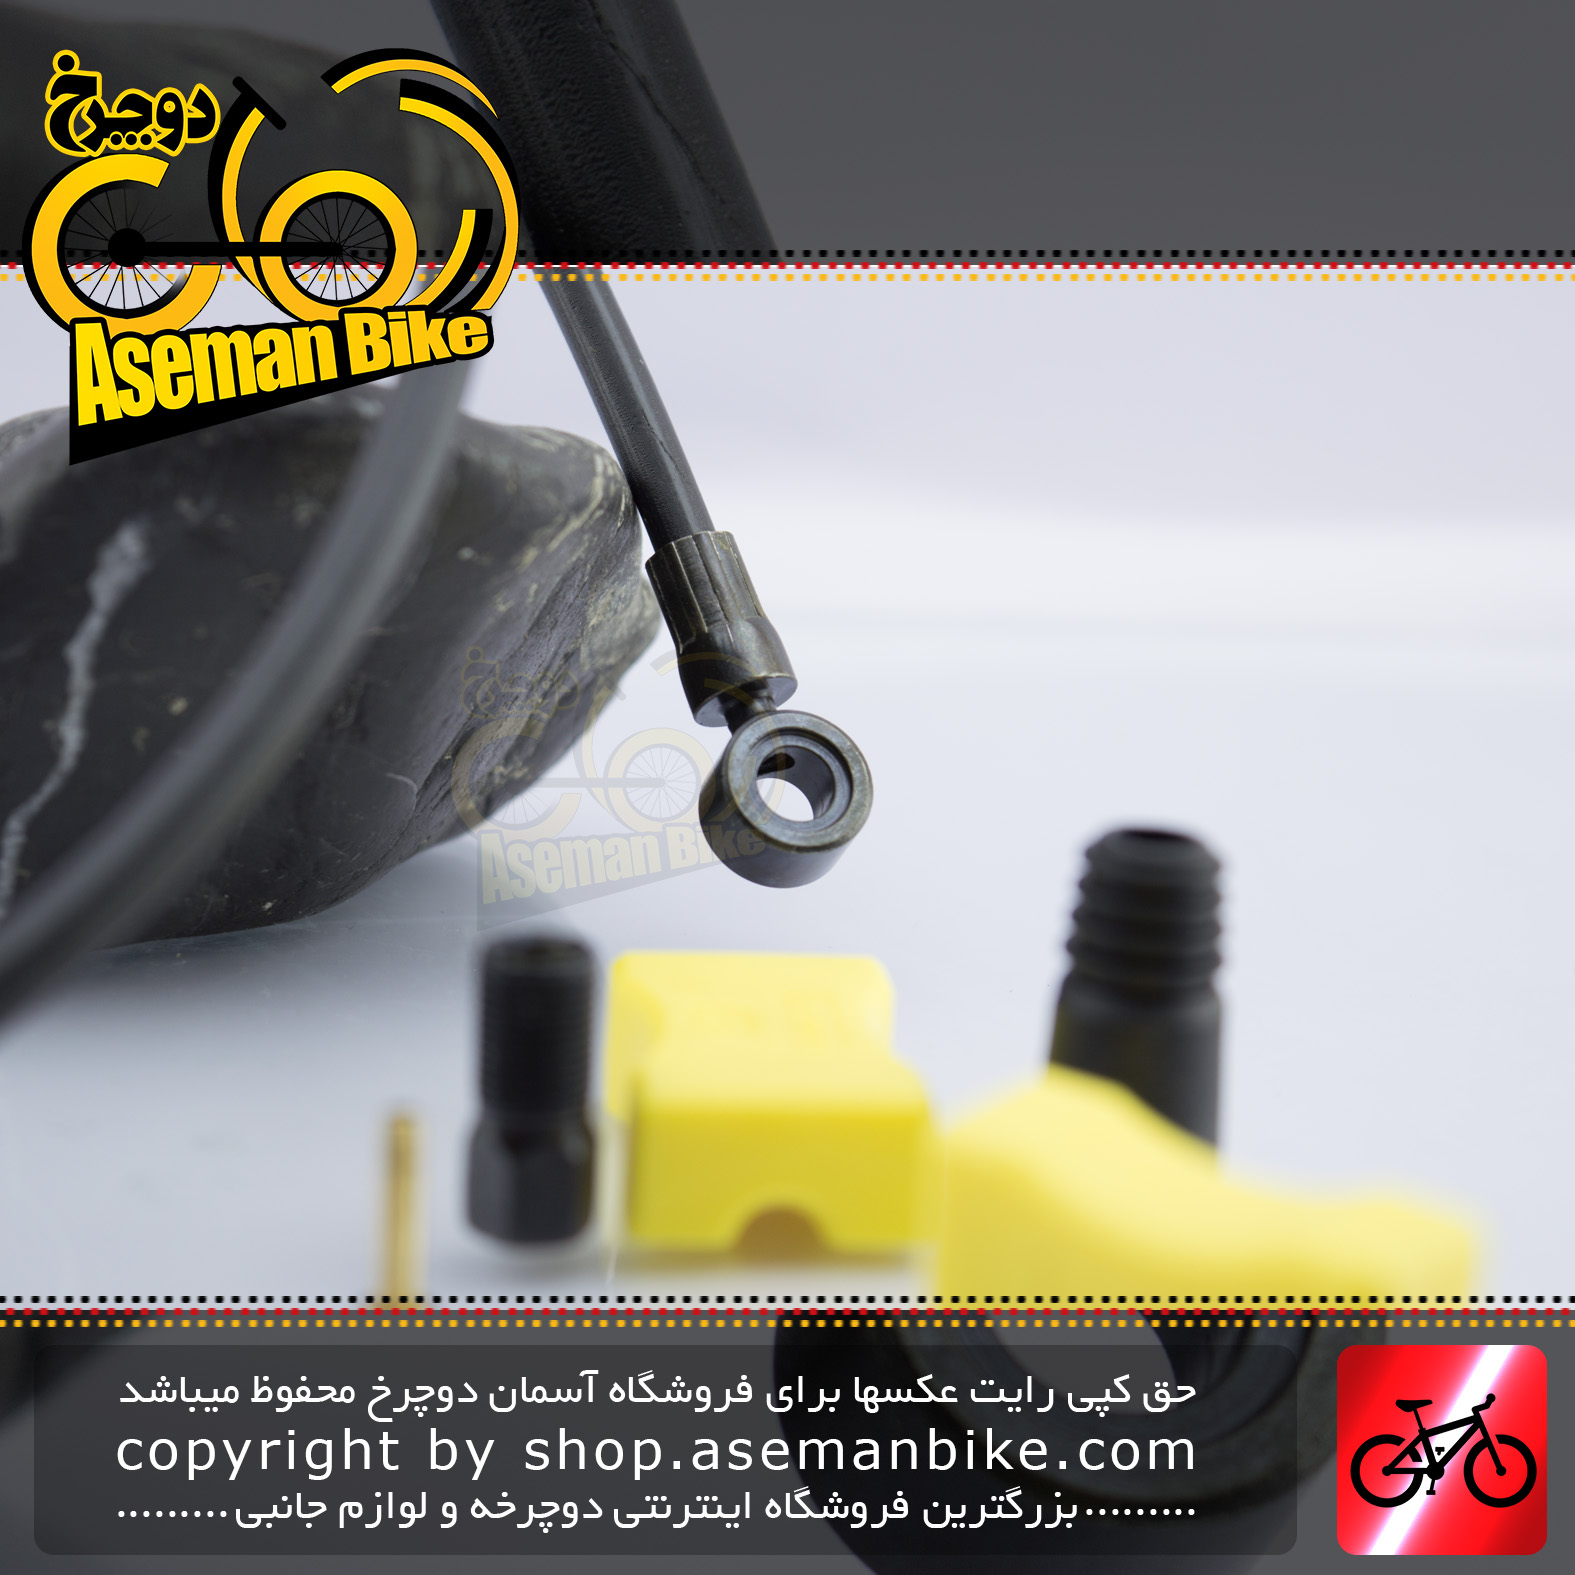 سیستم کابل و لوازم نصب ترمز دیسک روغنی دوچرخه شیمانو مدل بی اچ 62 مخصوص سری دئور و اکس تی ژاپن Shimano Bicycle Hydraulic Disc Brake House SM-BH62 Deore/Deore XT Compatible Japan